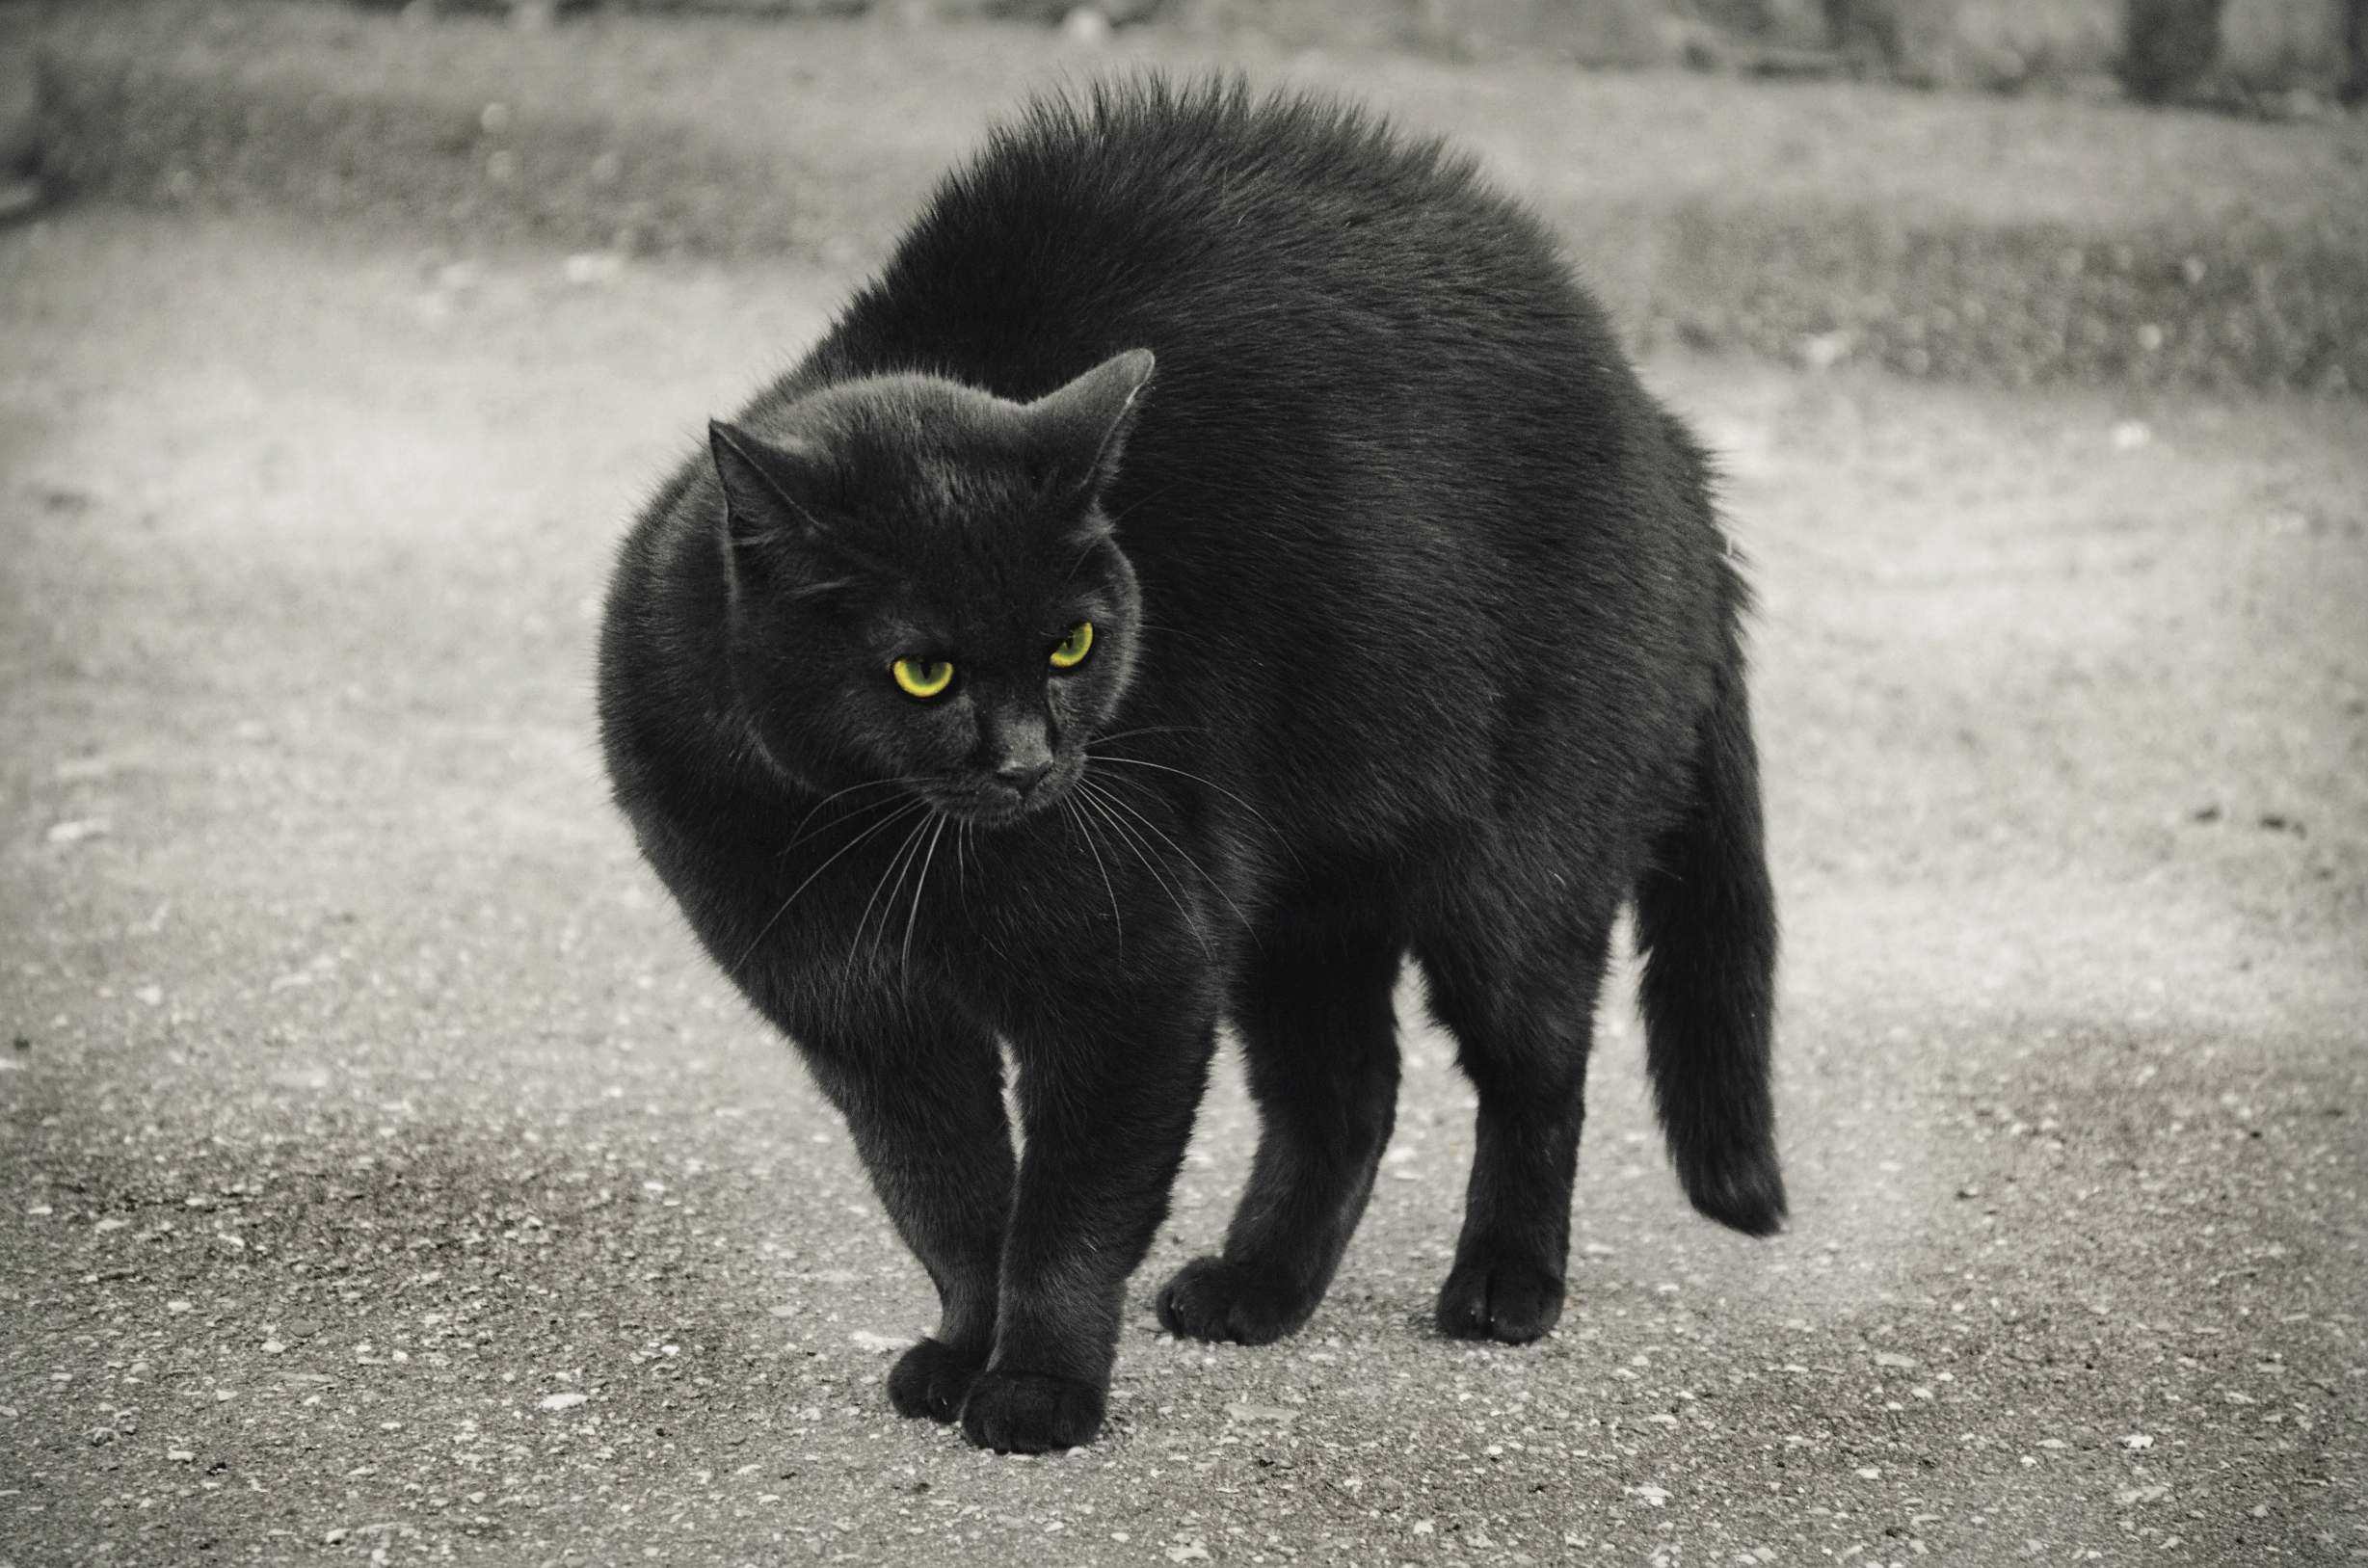 曾经有一只黑猫在角落里...